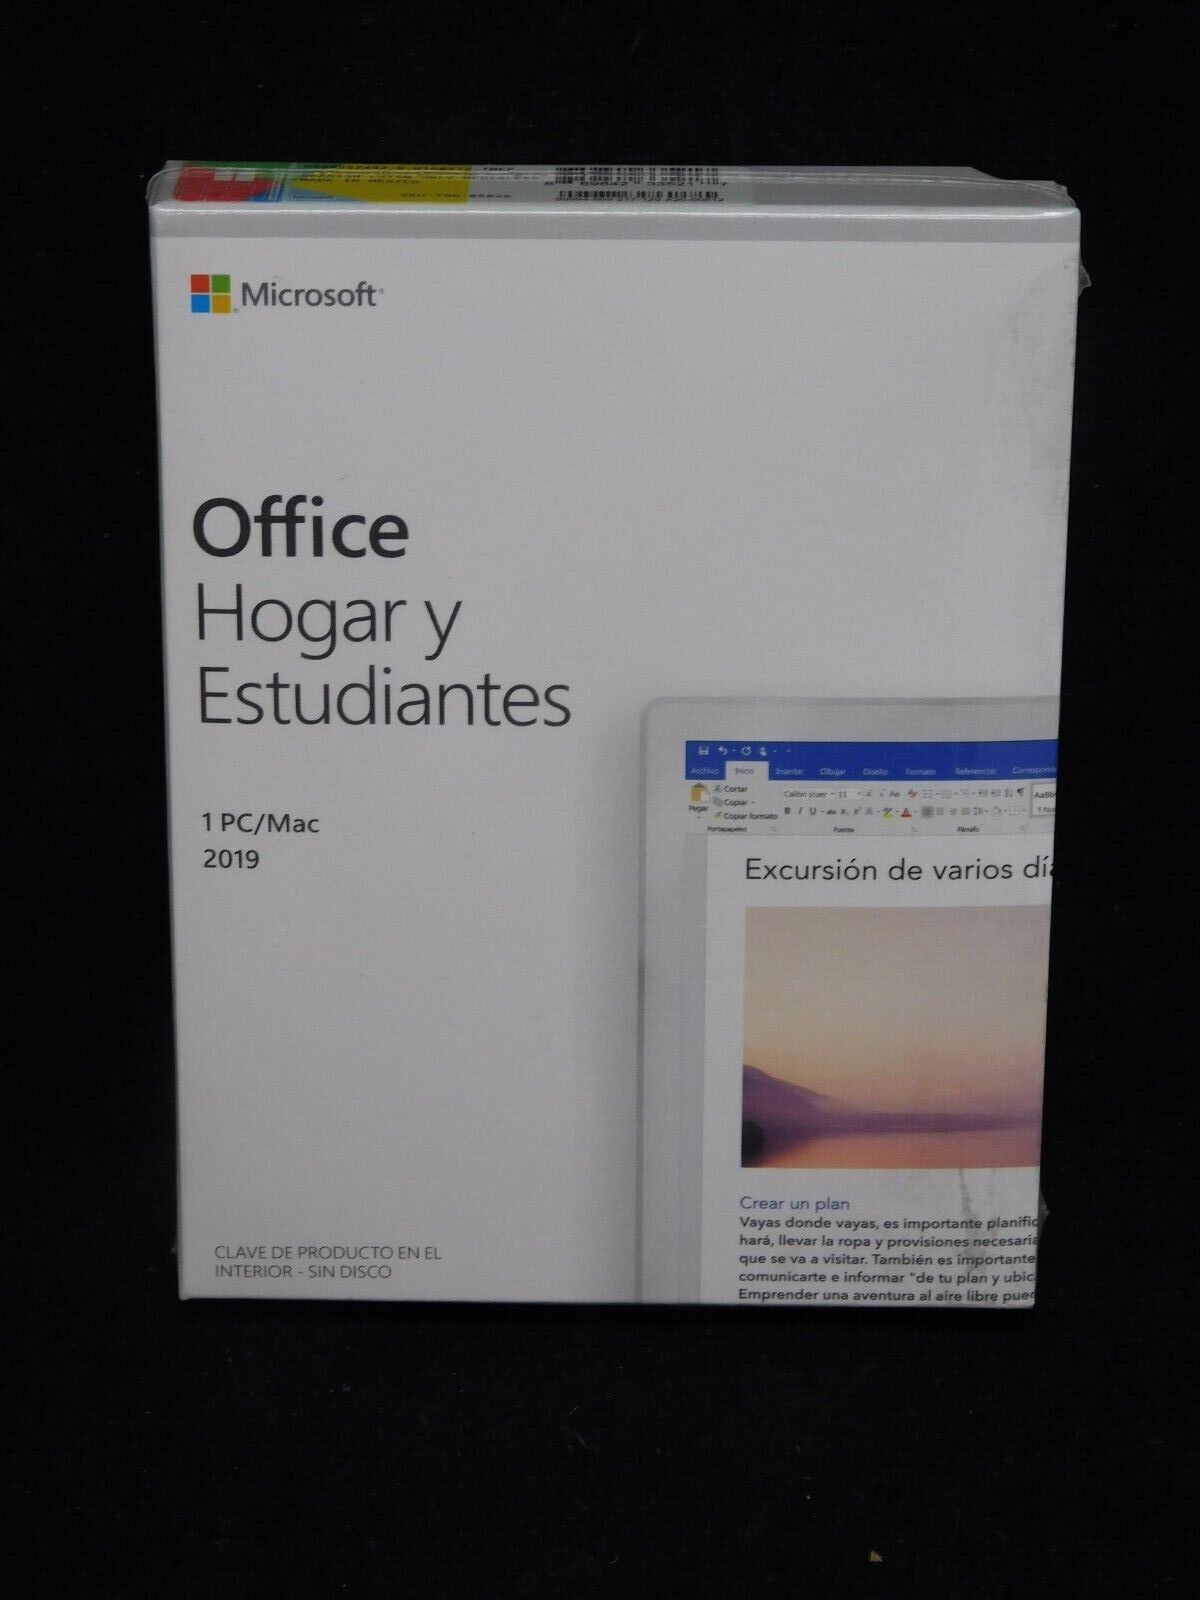 Microsoft  Office Hogar y Estudiantes  79G-05026  for PC/Mac  Latin America